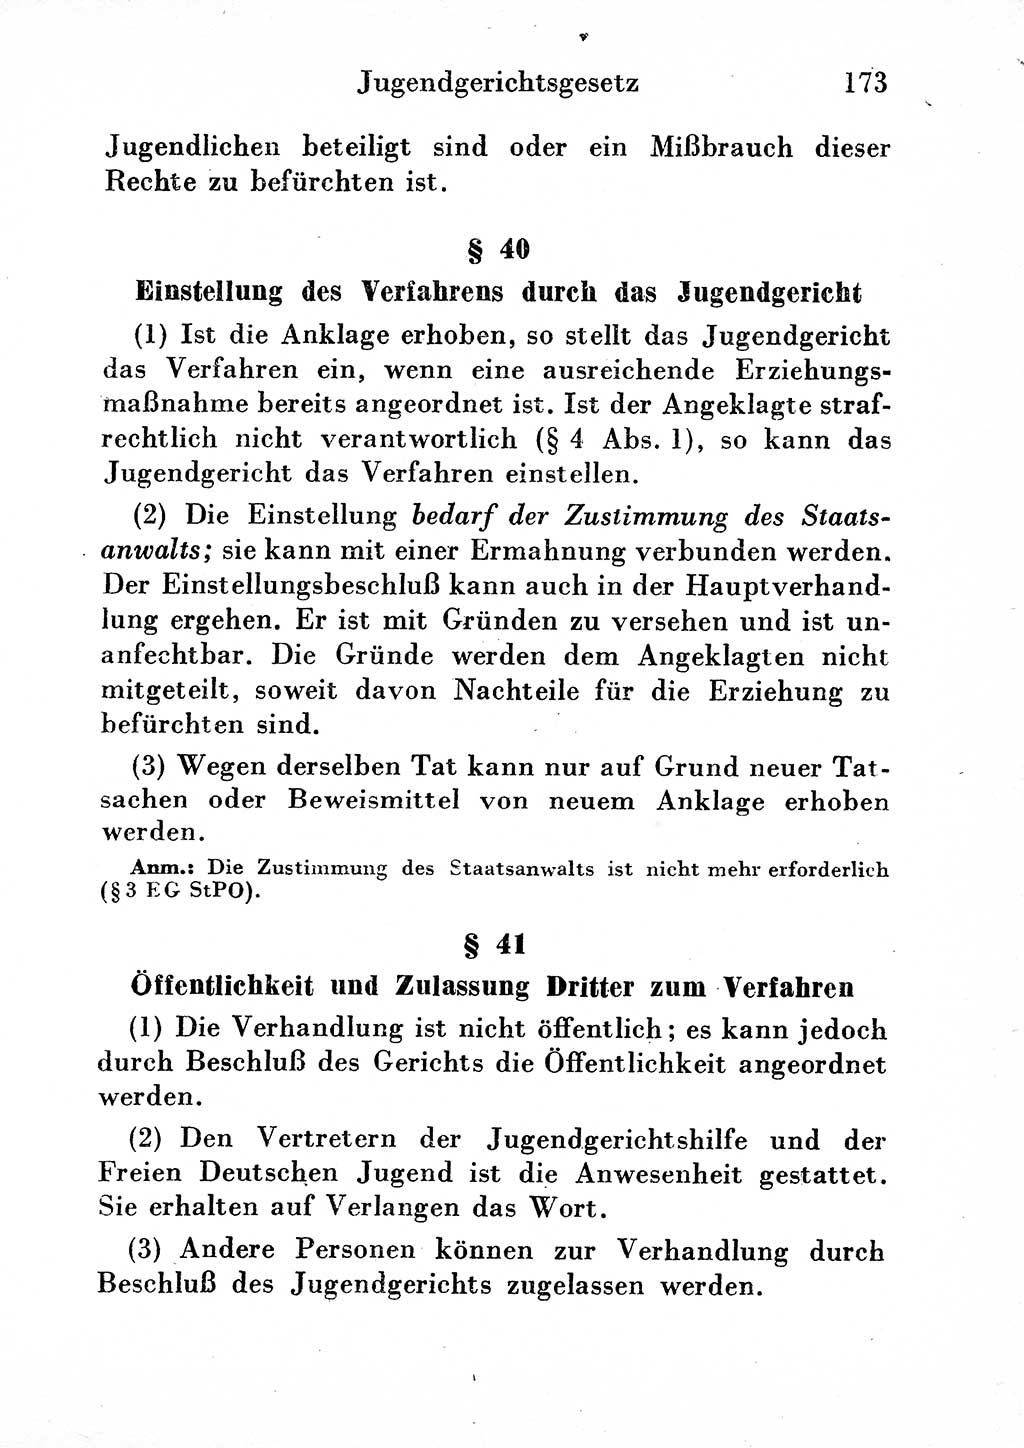 Strafgesetzbuch (StGB) und andere Strafgesetze [Deutsche Demokratische Republik (DDR)] 1954, Seite 173 (StGB Strafges. DDR 1954, S. 173)